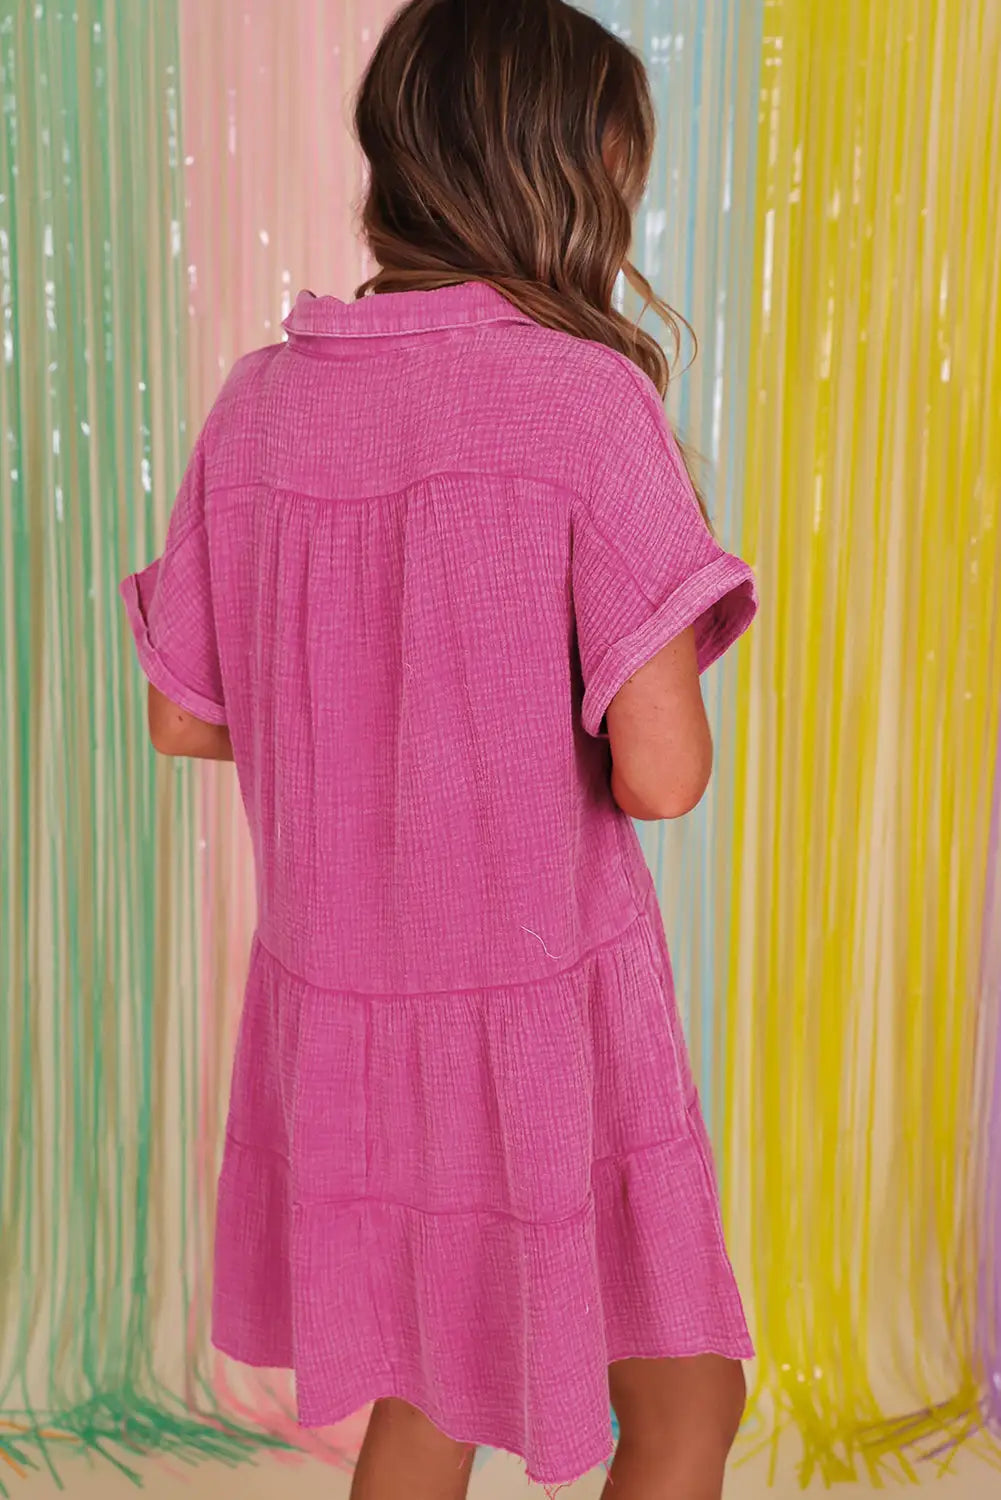 Strawberry pink mineral wash tiered dress - dresses/mini dresses